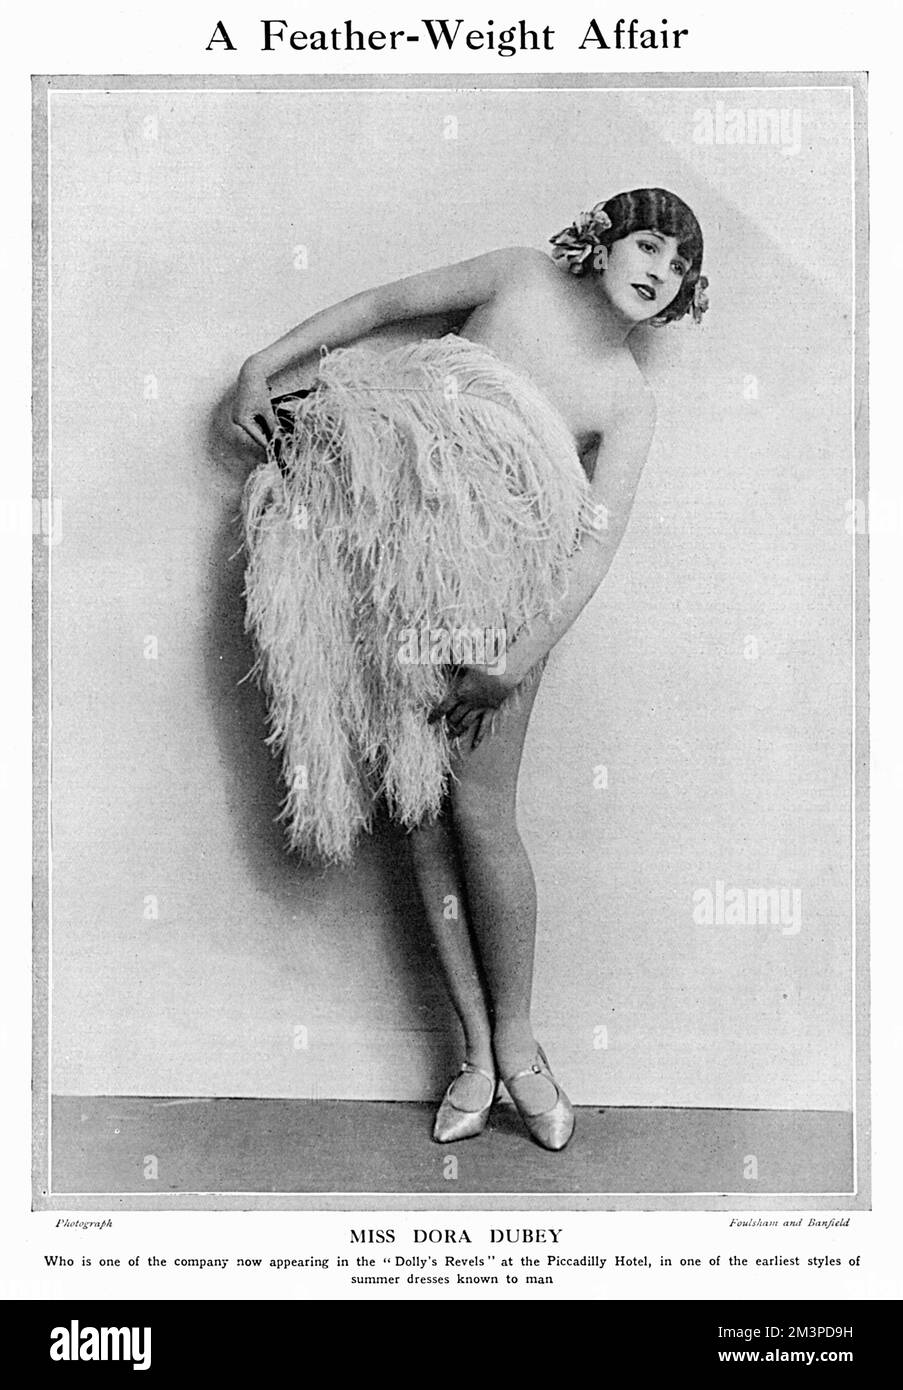 La signorina Dora Dusey, una delle aziende che apparve in Dolly's Revels al Piccadilly Hotel di Londra nel 1924. Il Bystander commenta che è, 'in uno dei primi stili di abiti estivi conosciuto per l'uomo.' Data: 1924 Foto Stock